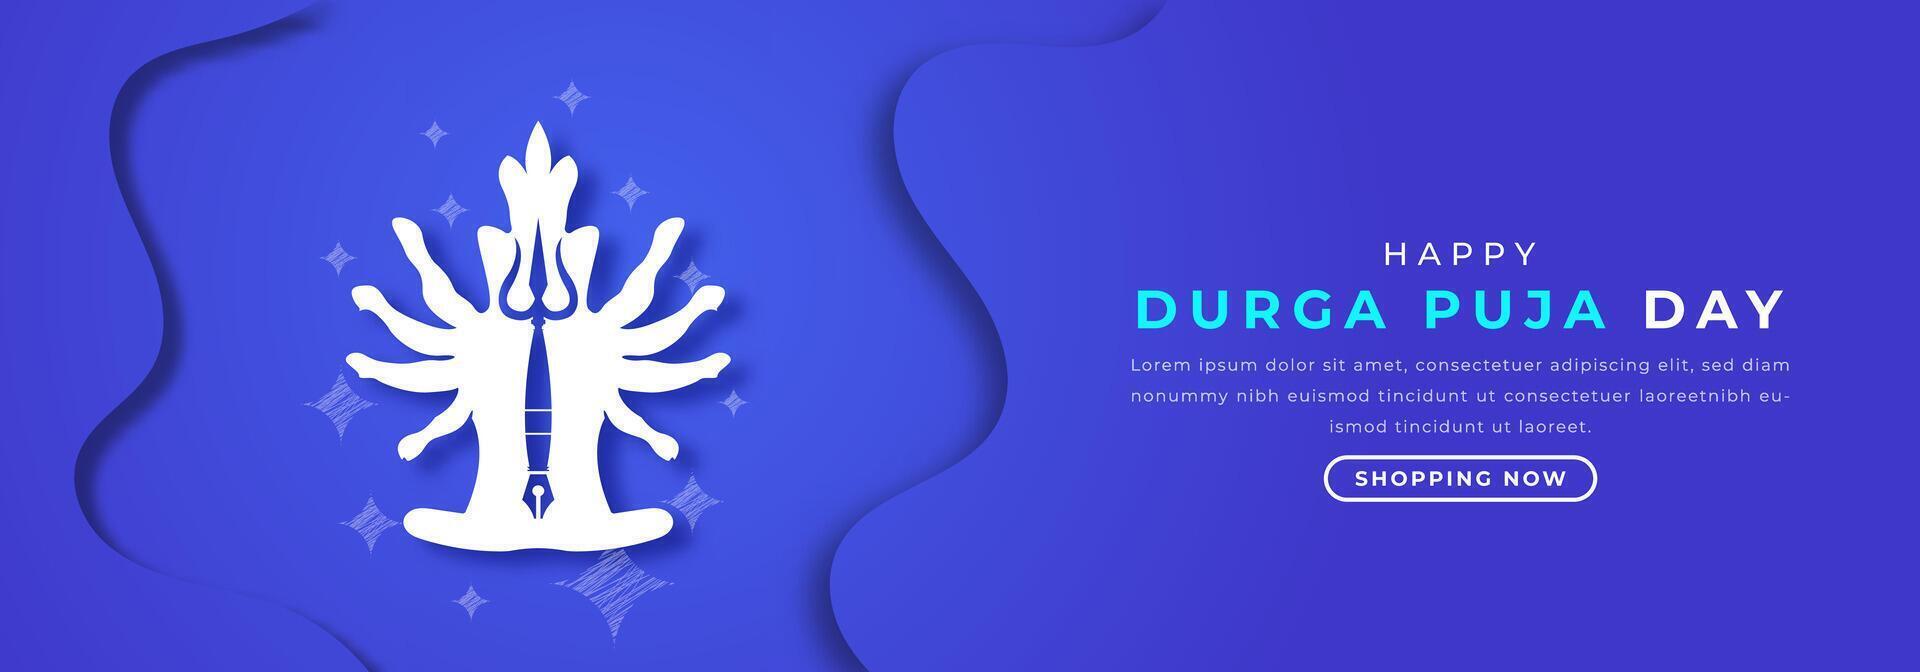 contento Durga puja día papel cortar estilo vector diseño ilustración para fondo, póster, bandera, publicidad, saludo tarjeta